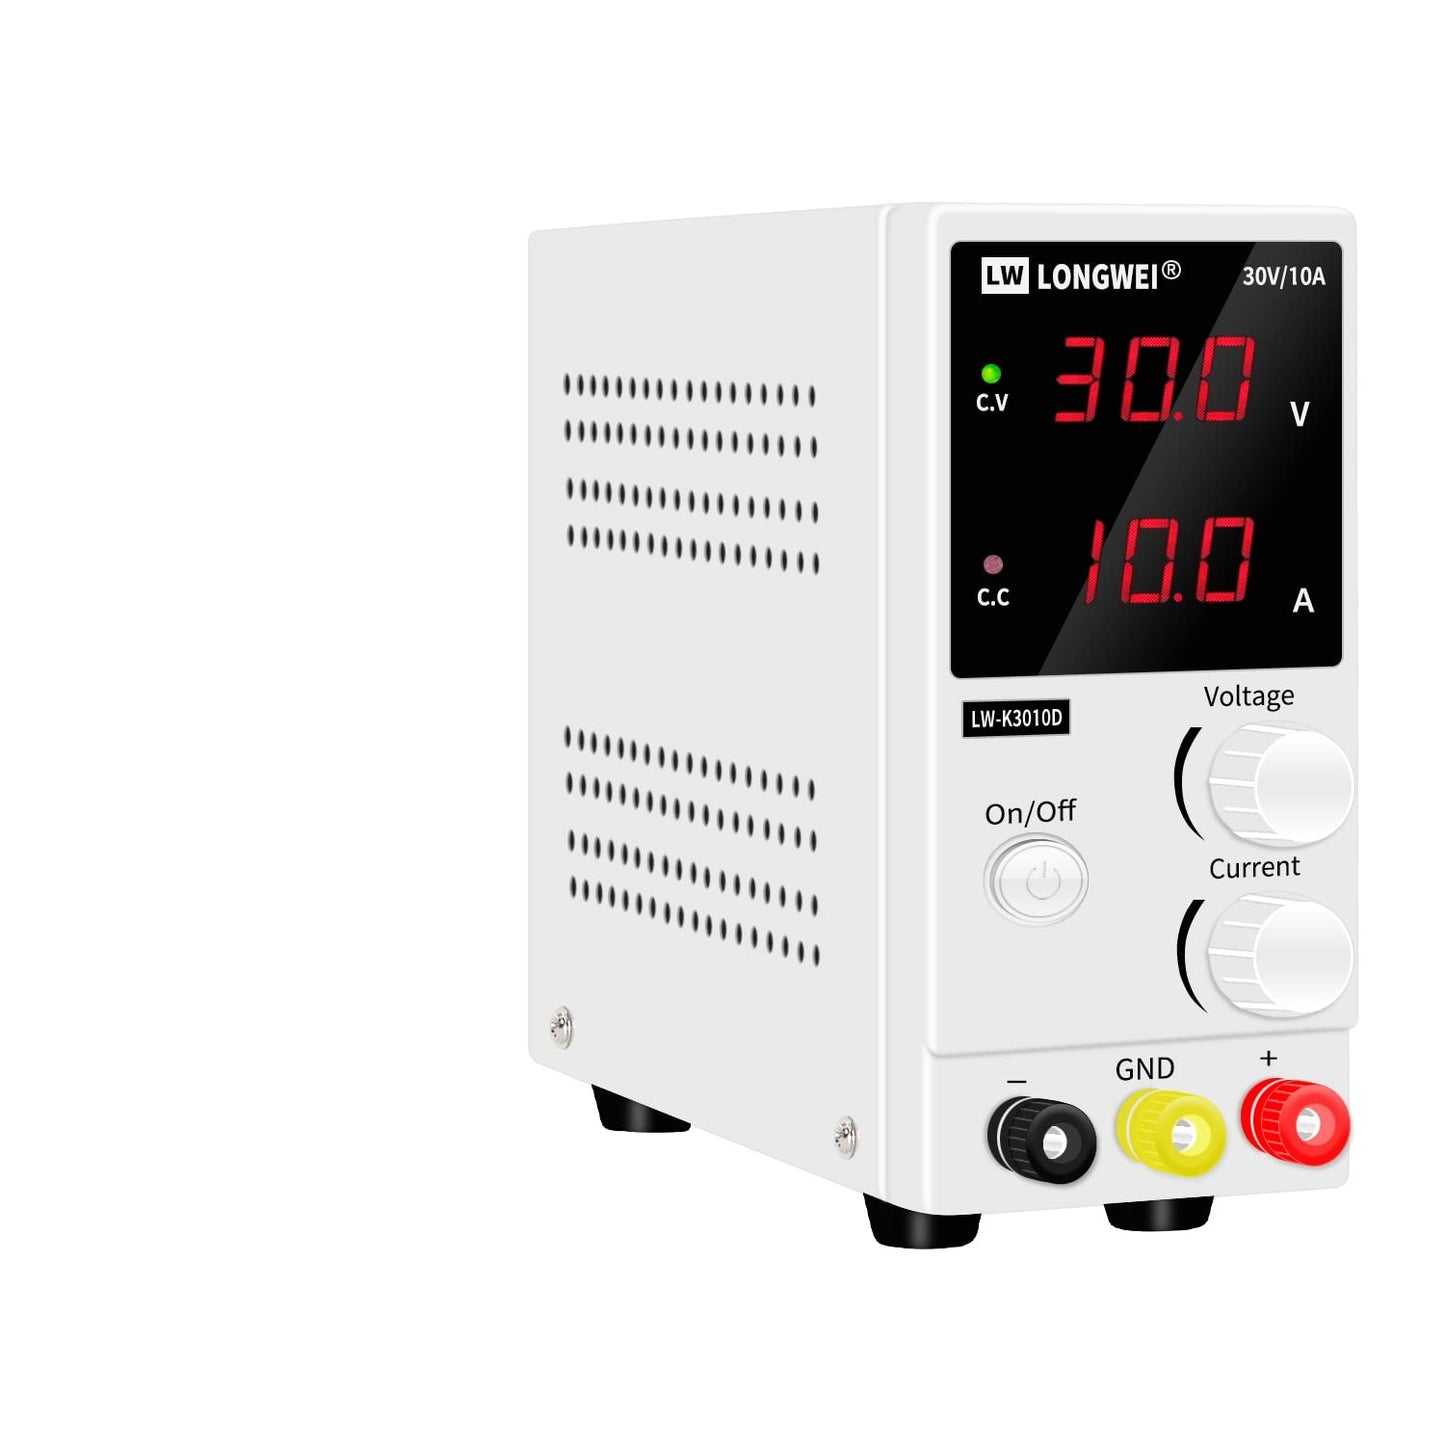 LW-K3010D Digital DC Power Supply Adjustable 30V 10A